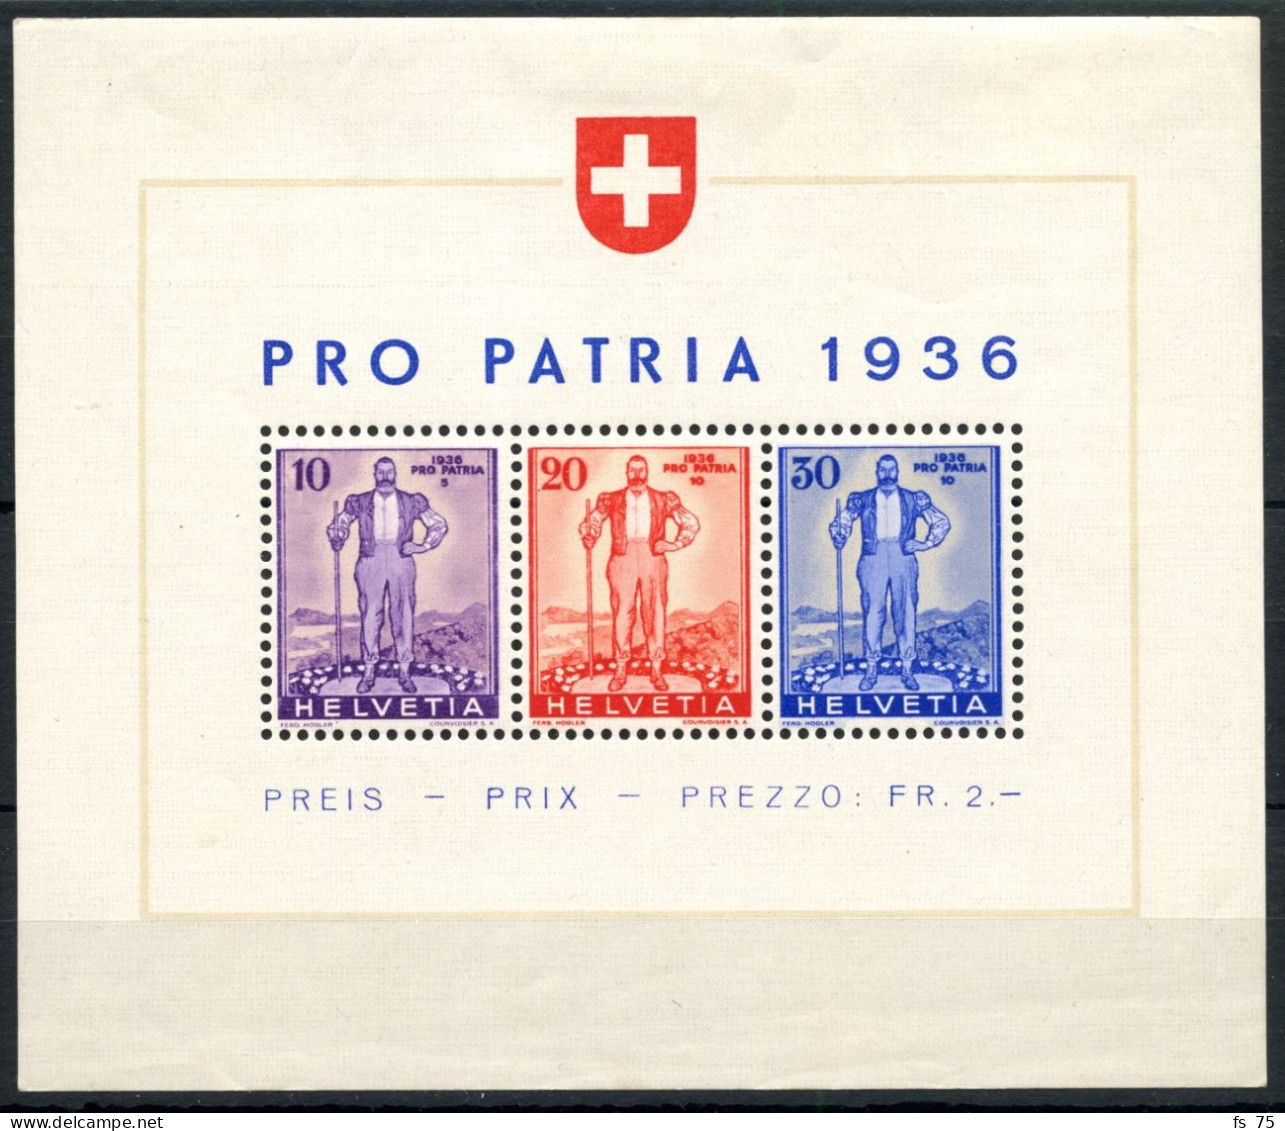 SUISSE - BLOC W 8 - PRO PATRIA 1936 - AVEC CHARNIERE - Blocks & Kleinbögen